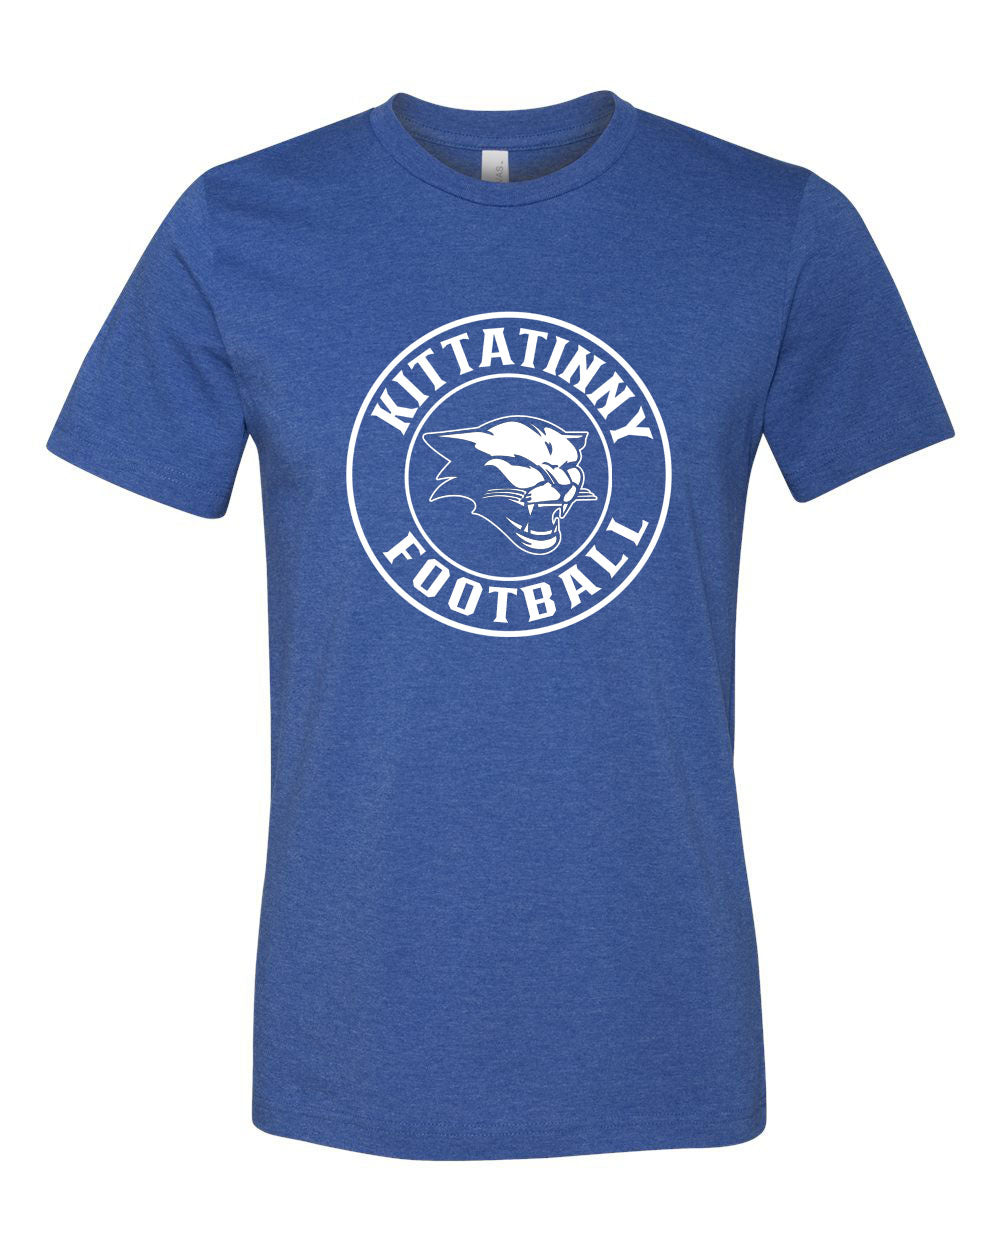 Kittatinny Design 5 Football t-Shirt